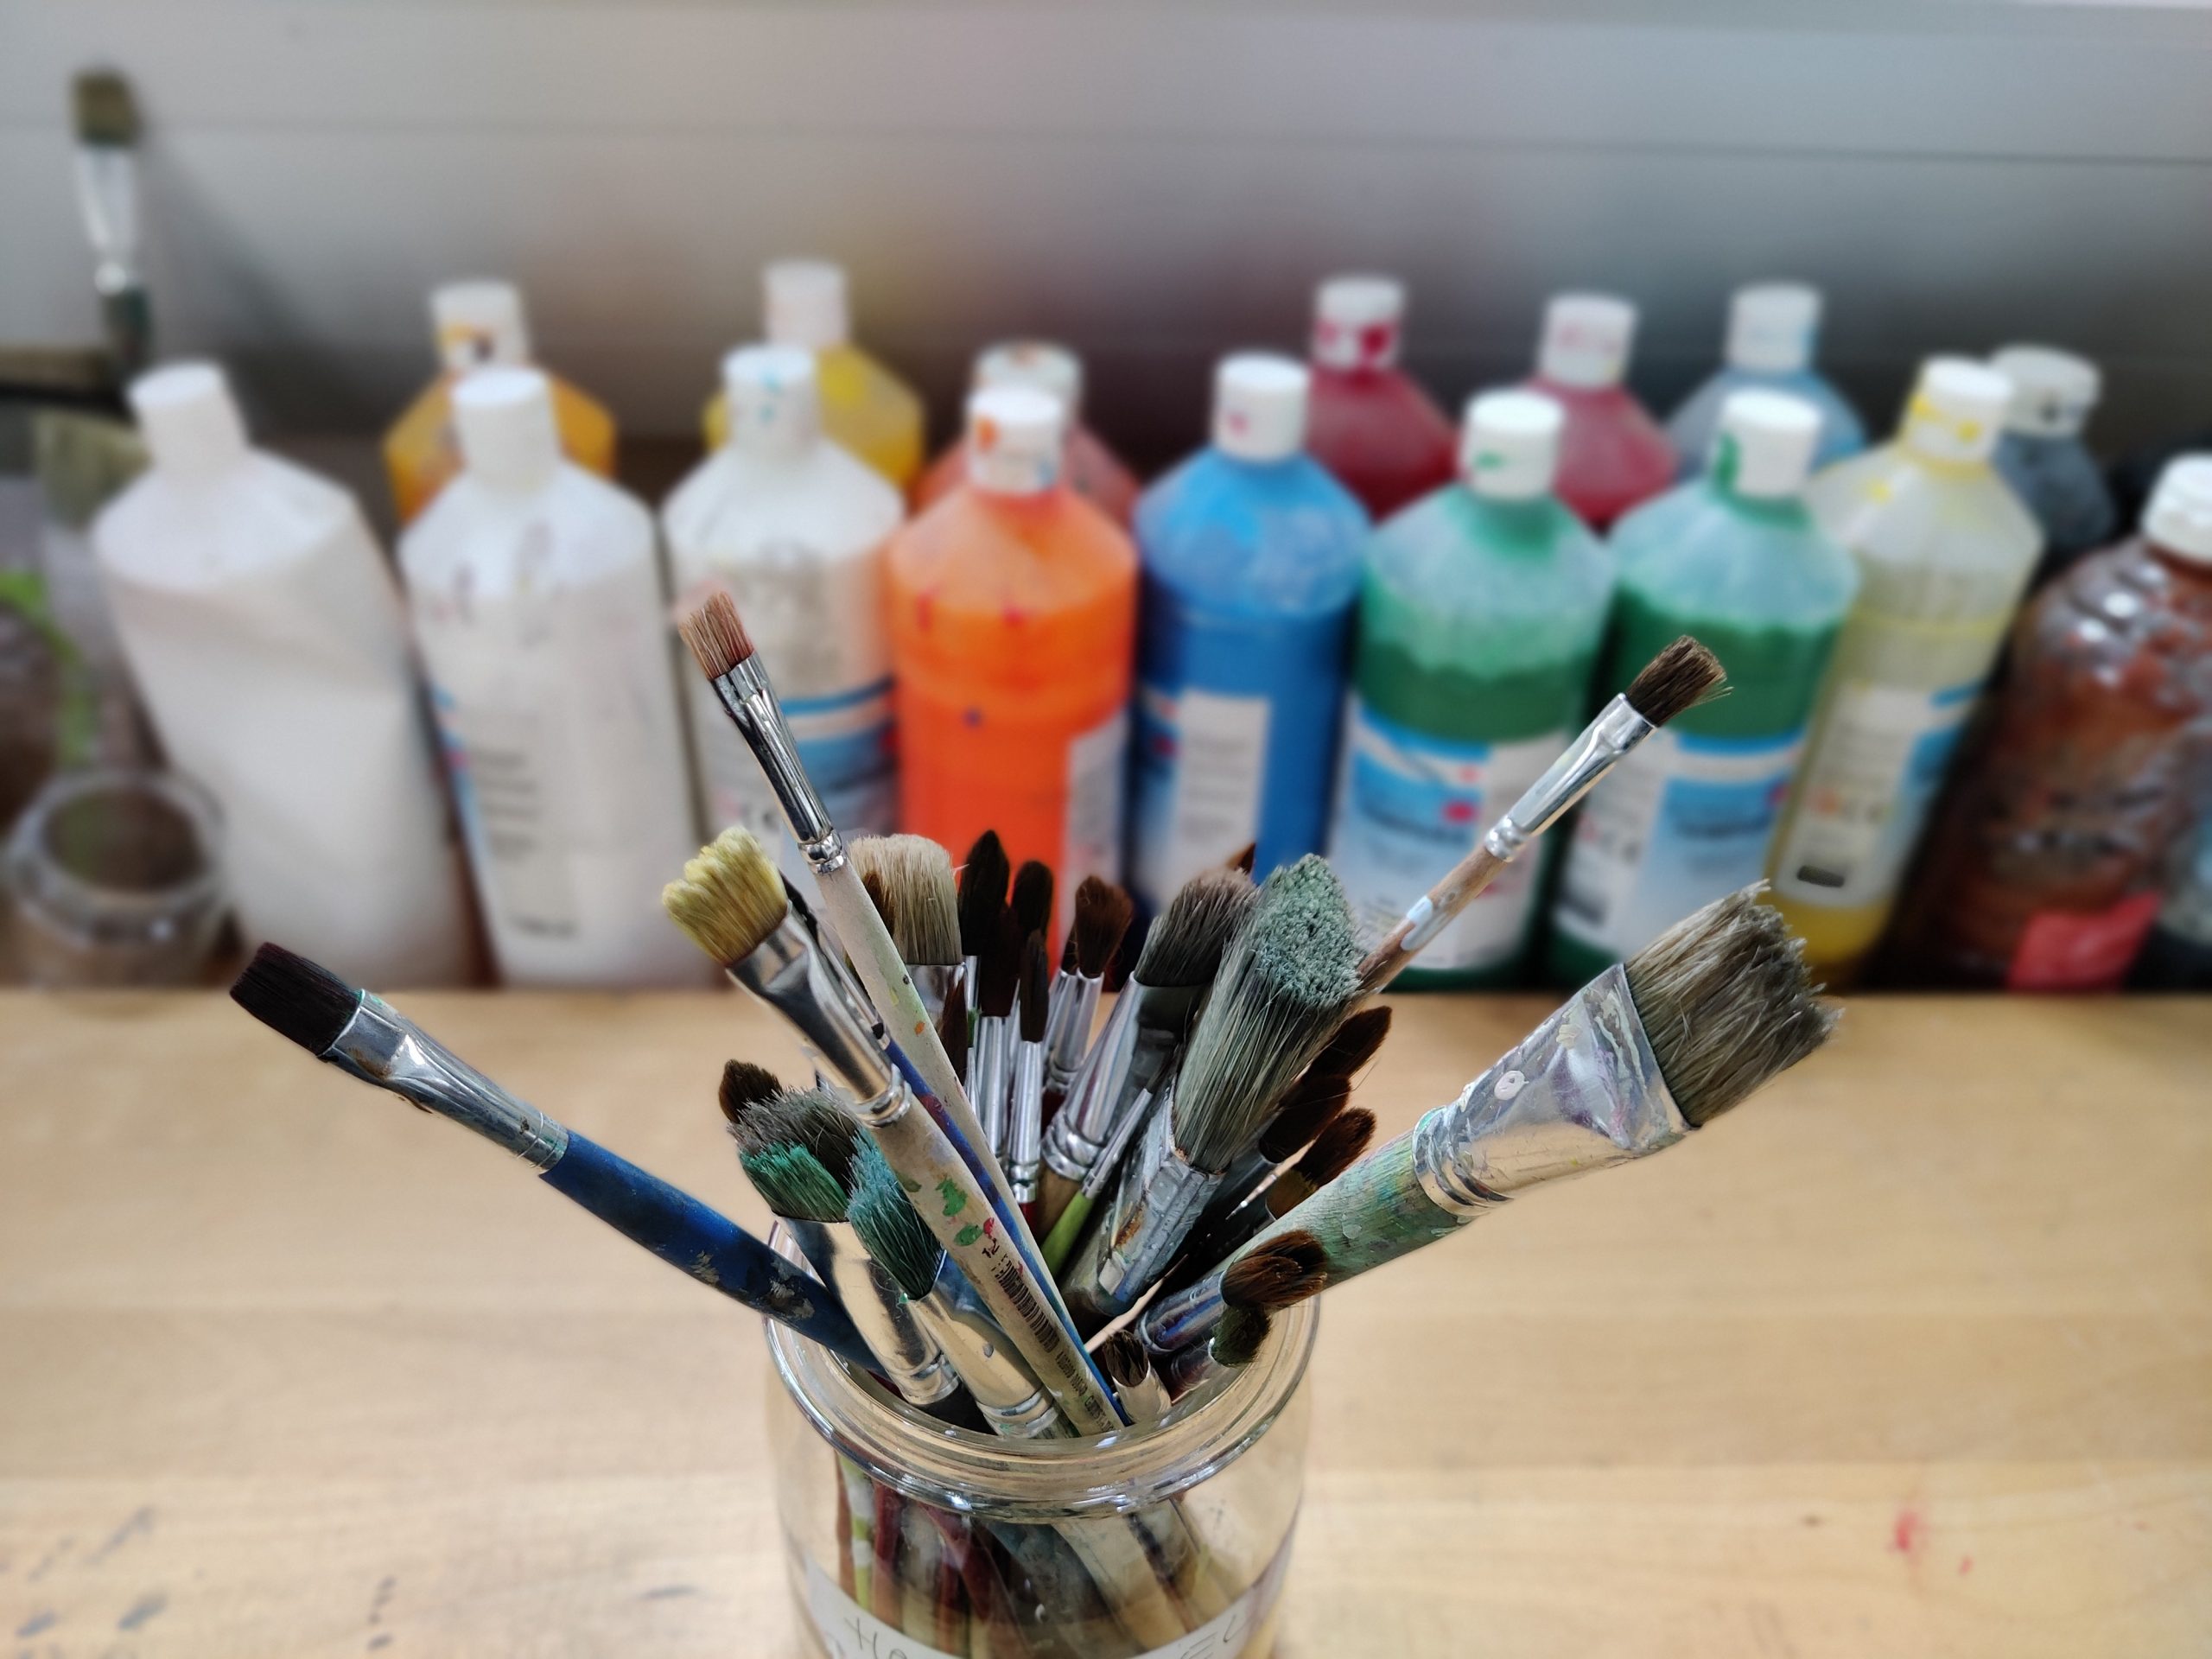 Das Atelier Pinsel und Farben